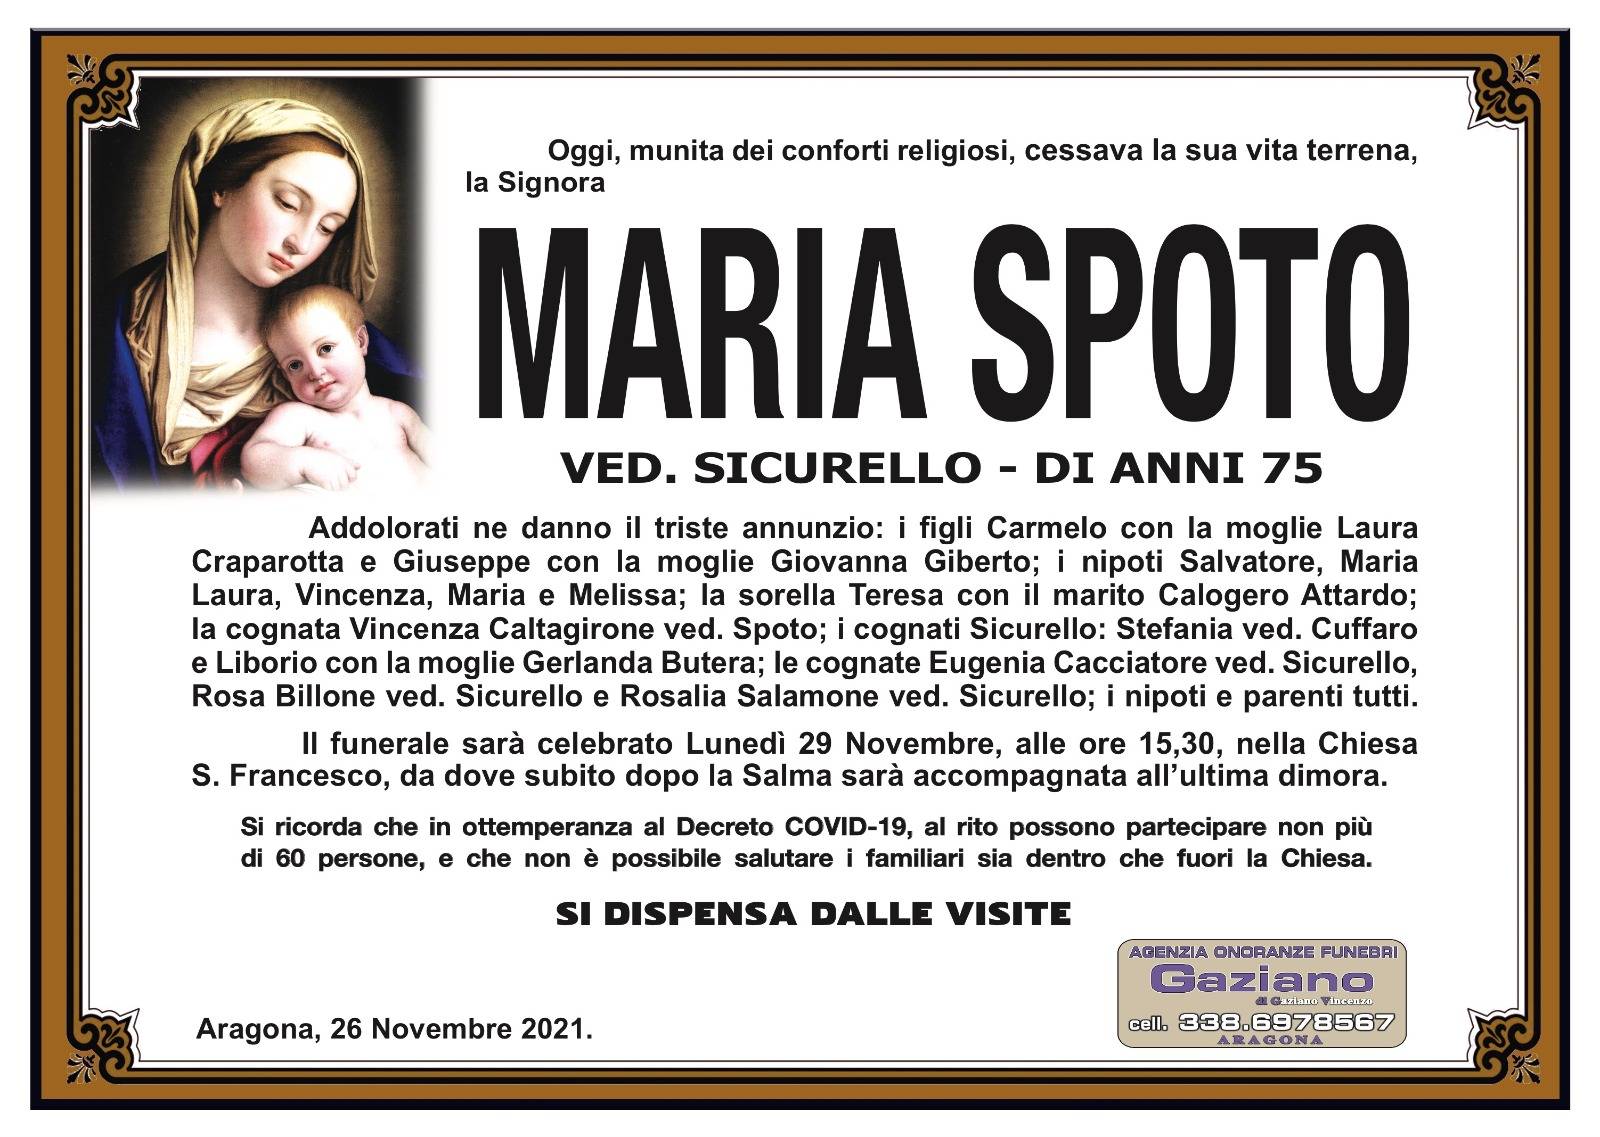 Maria Spoto